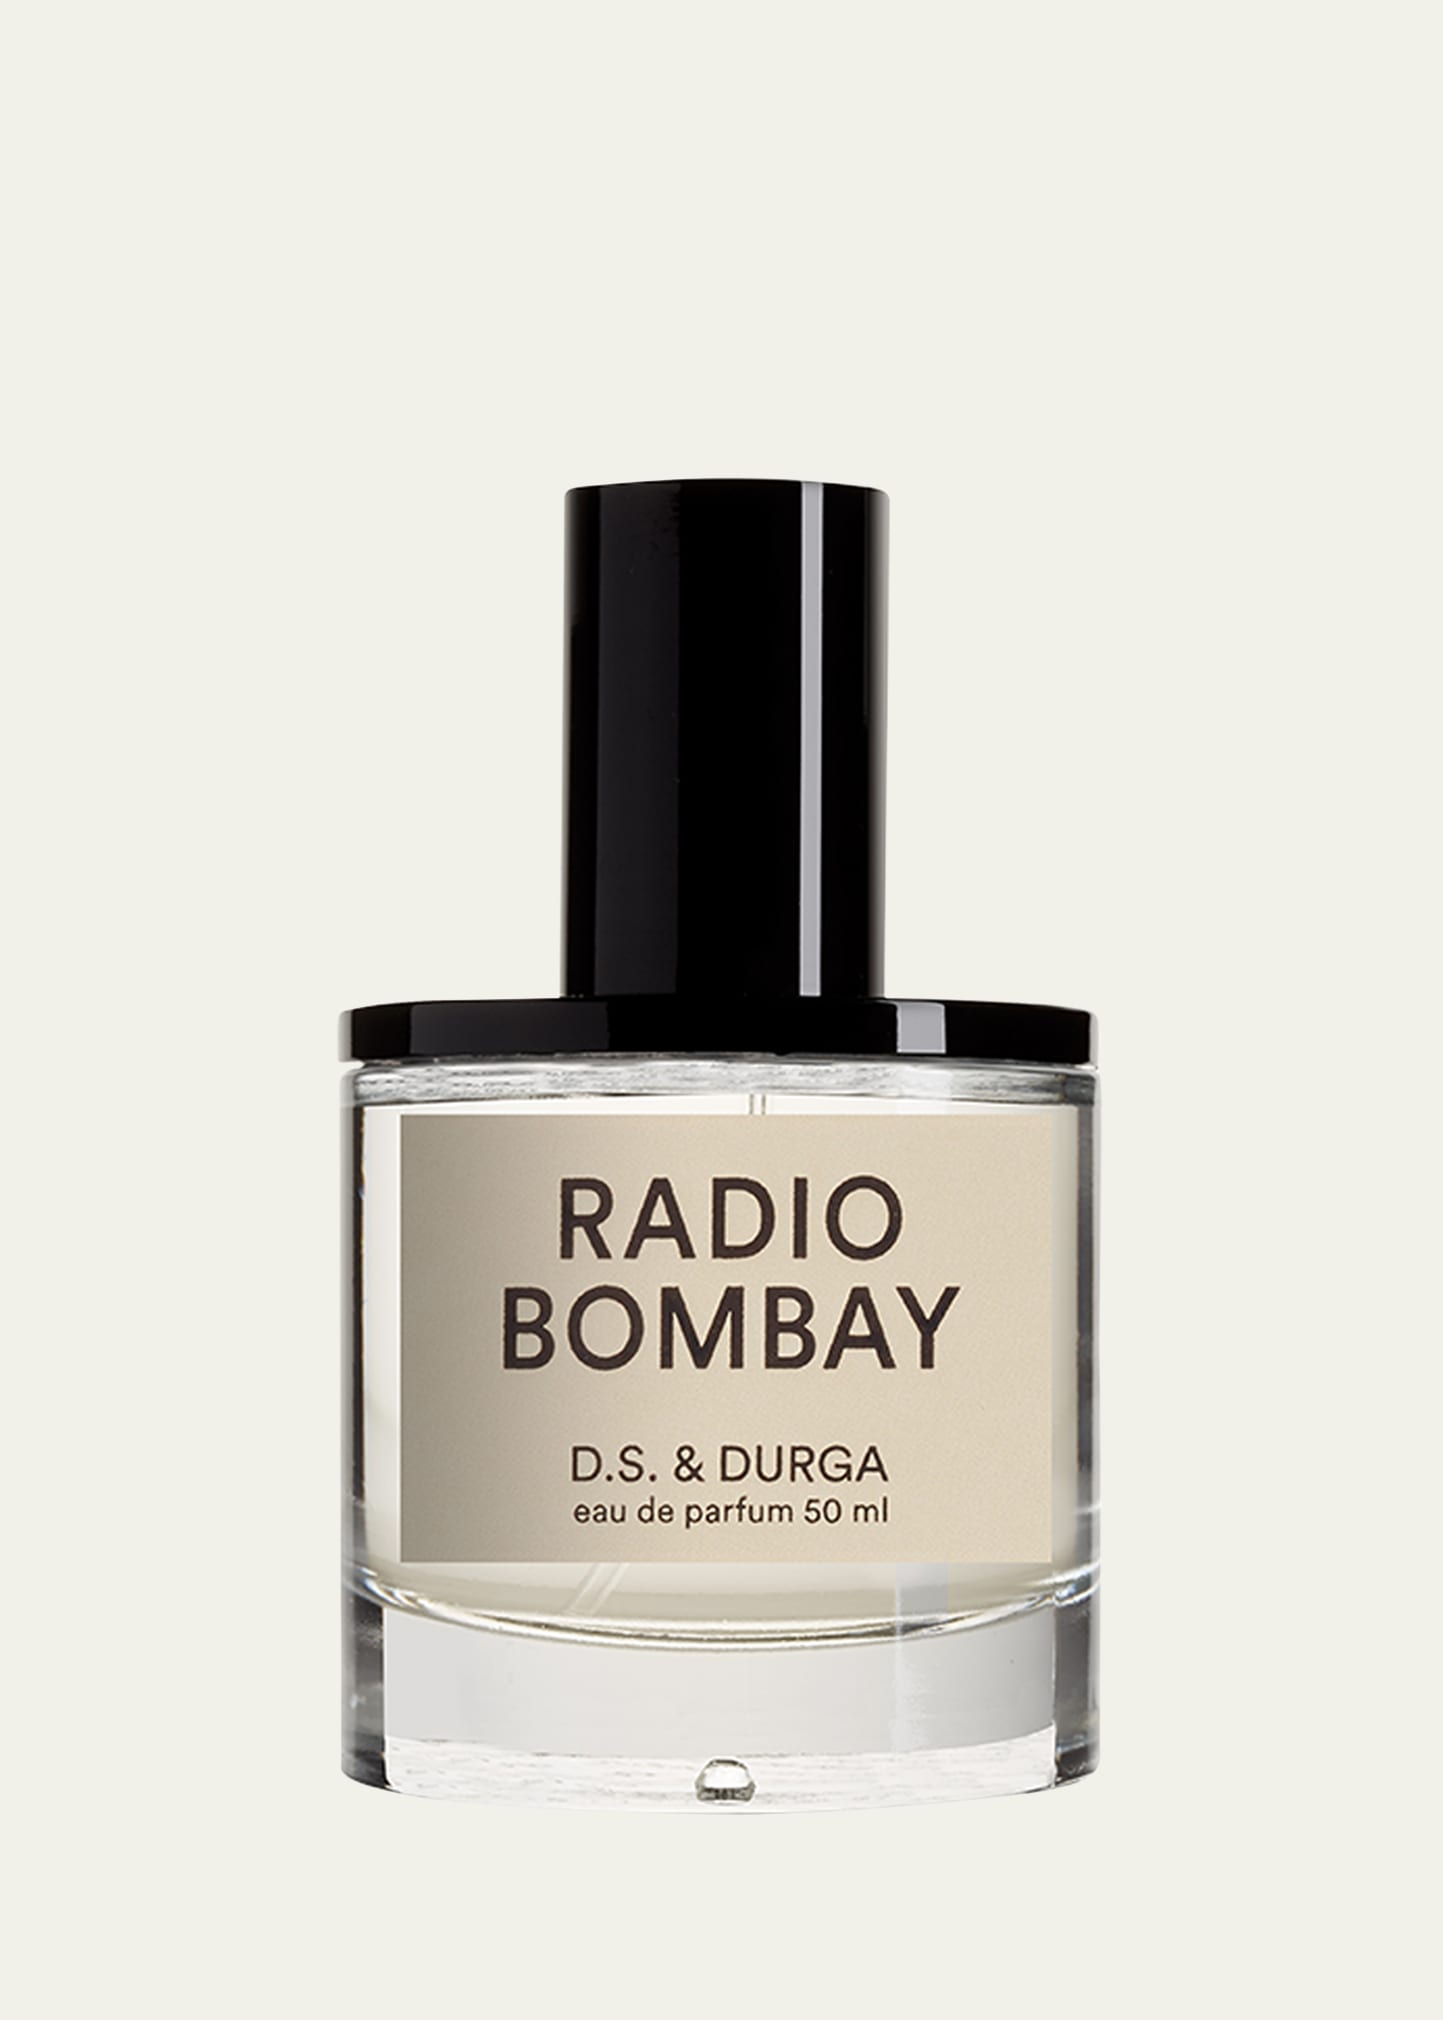 D.s. & Durga 1.7 Oz. Radio Bombay Eau De Parfum